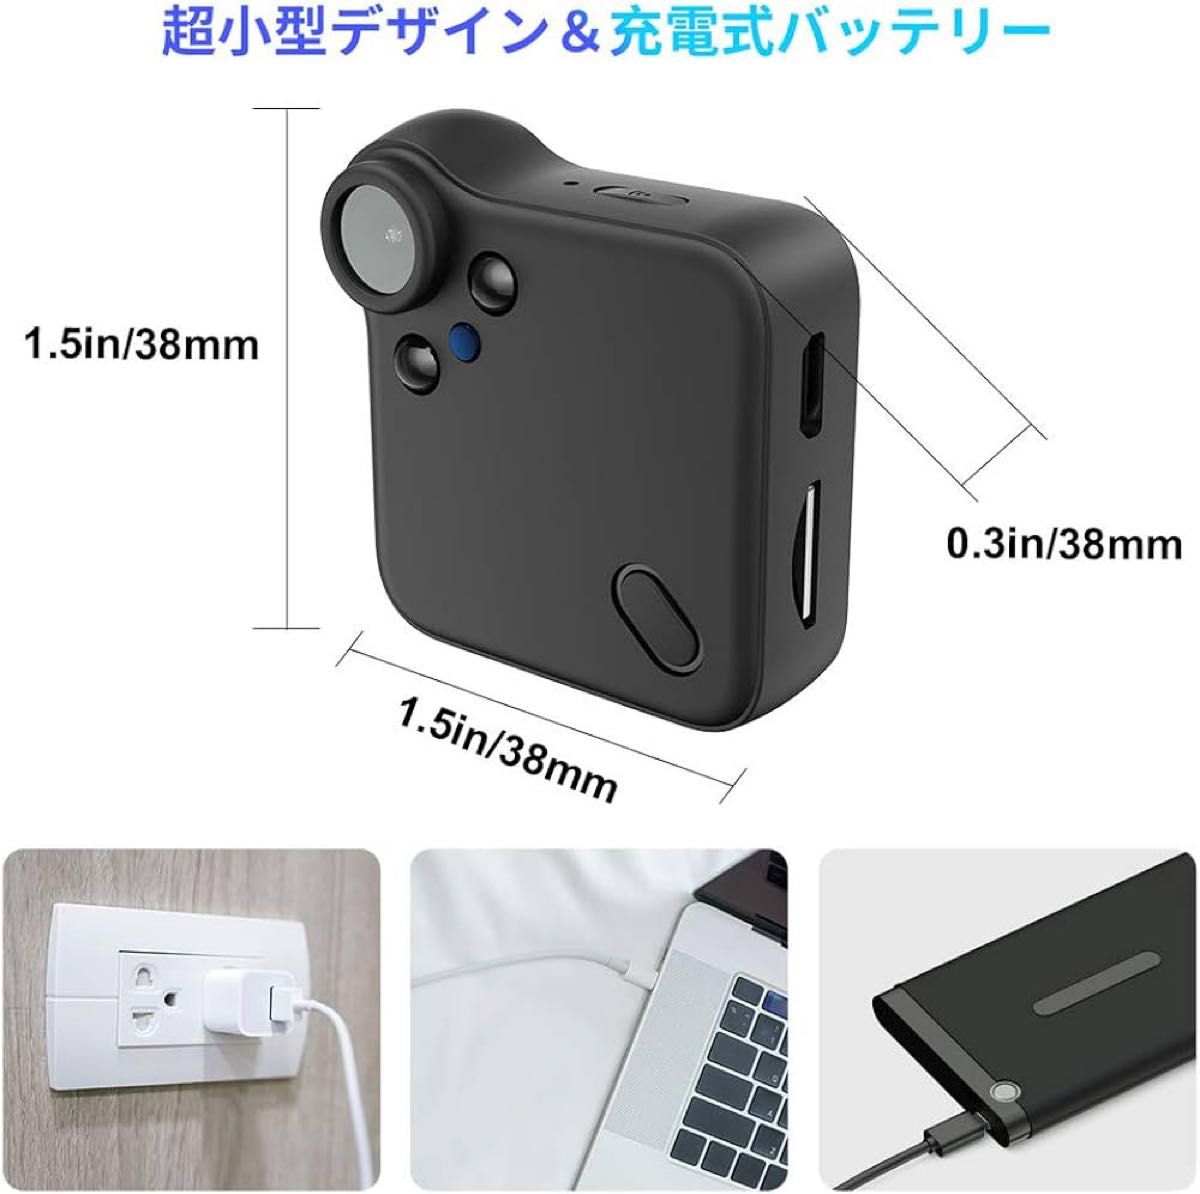 小型カメラ 防犯カメラ Wi-Fi対応 録画機能 動体検知 広角150度 見守りカメラ